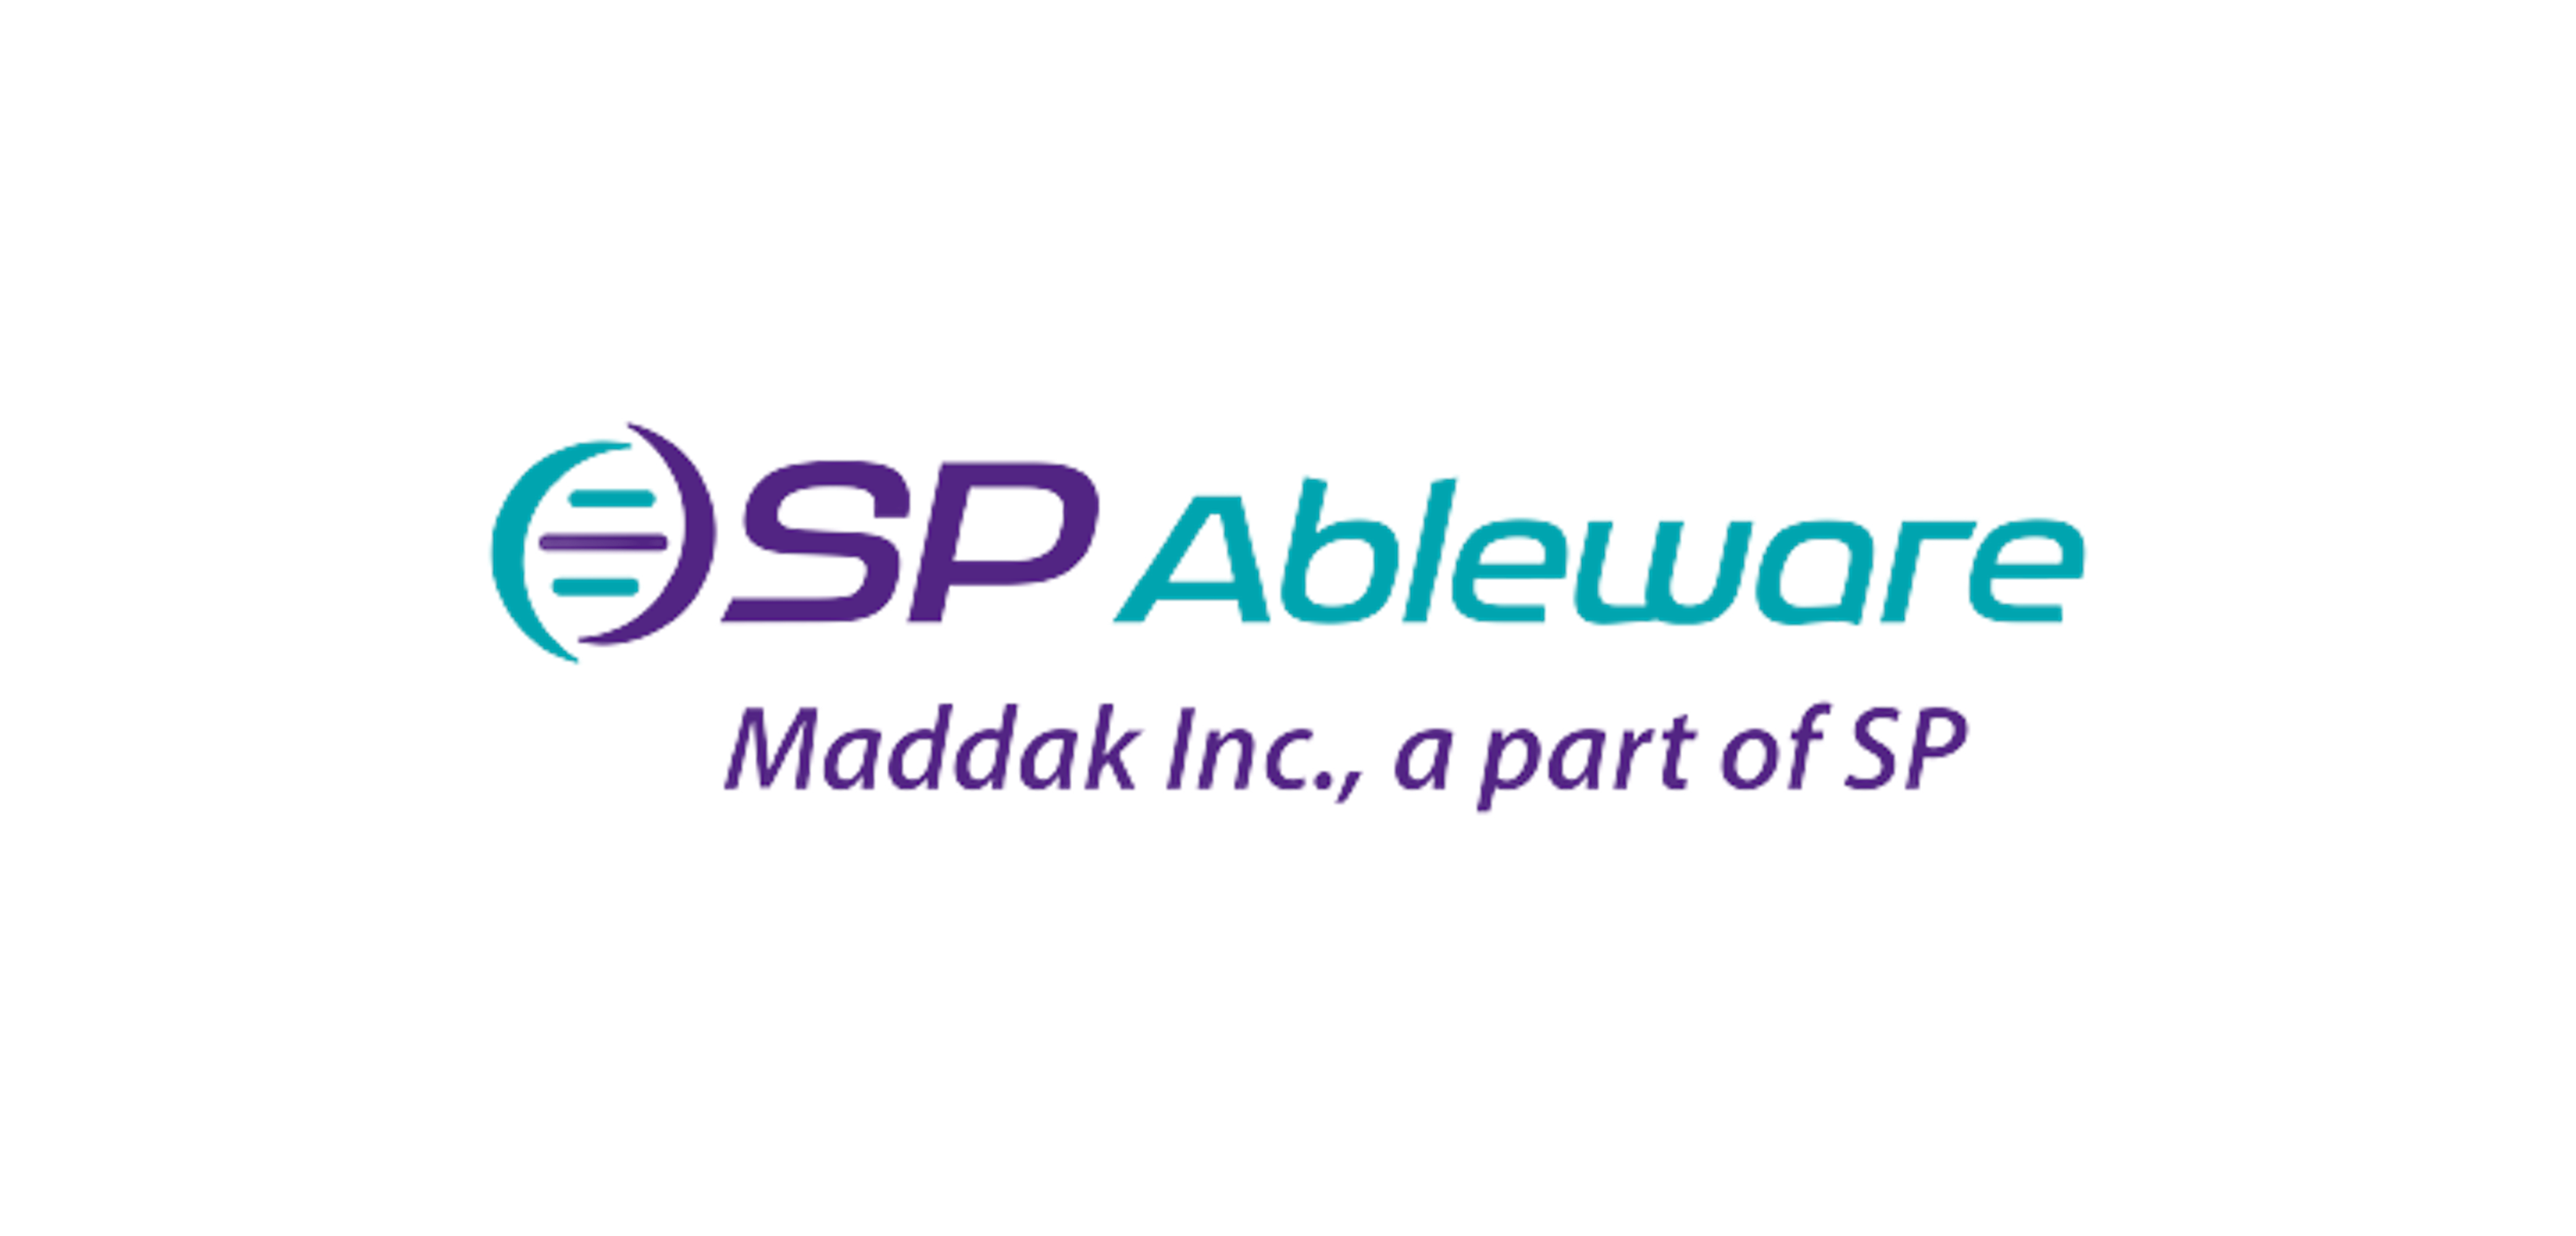 SP Ableware - Maddak